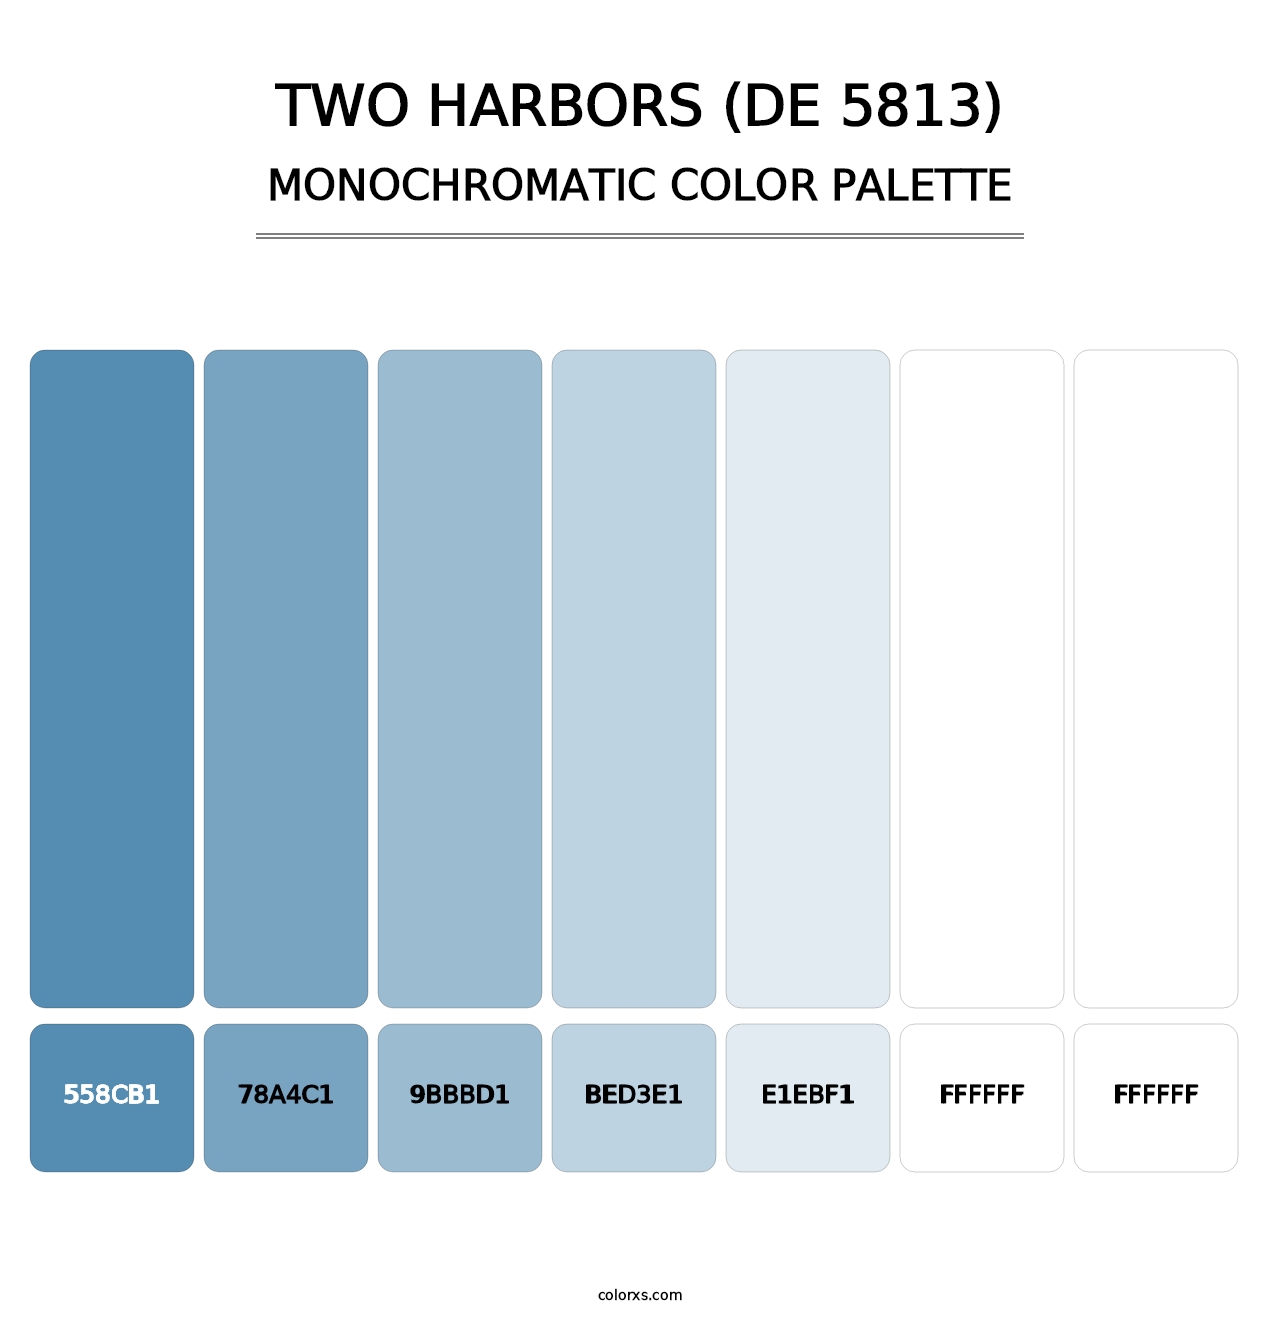 Two Harbors (DE 5813) - Monochromatic Color Palette